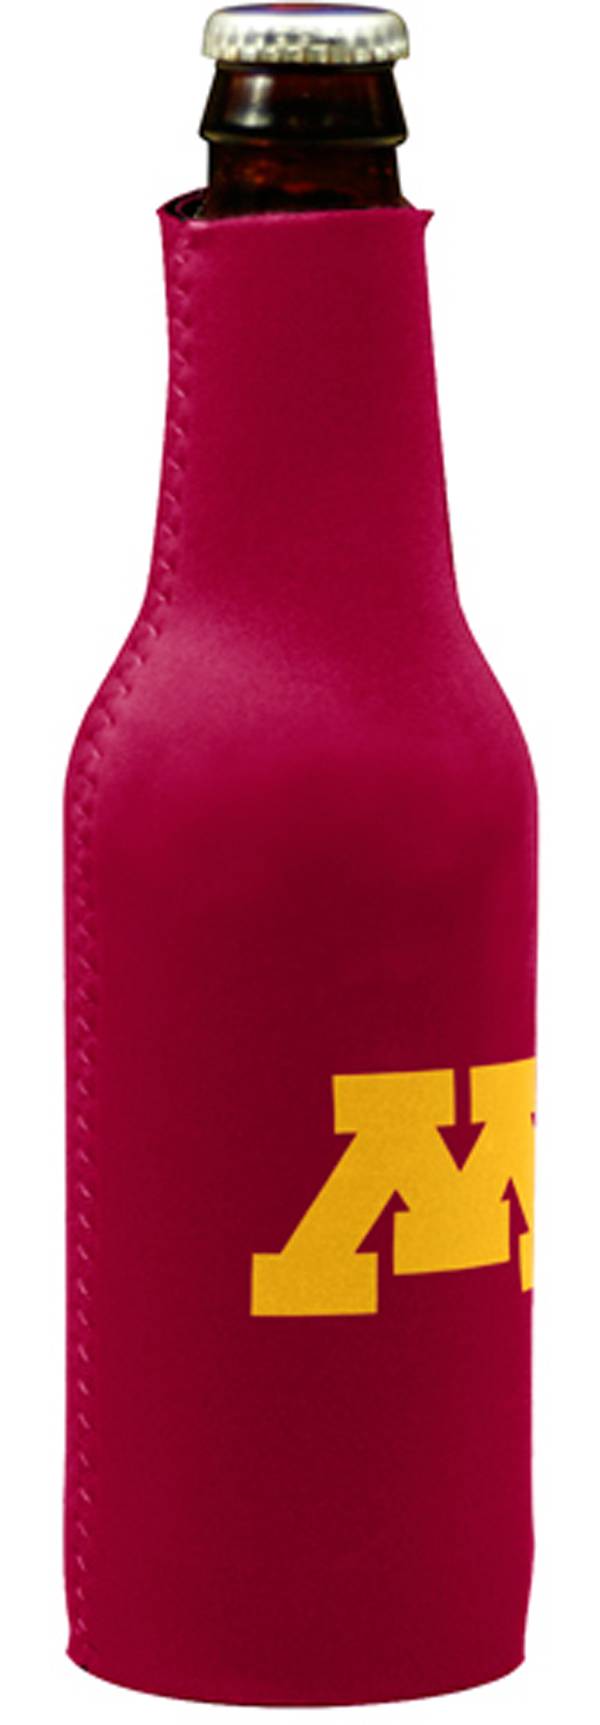 Minnesota Golden Gophers Bottle Koozie